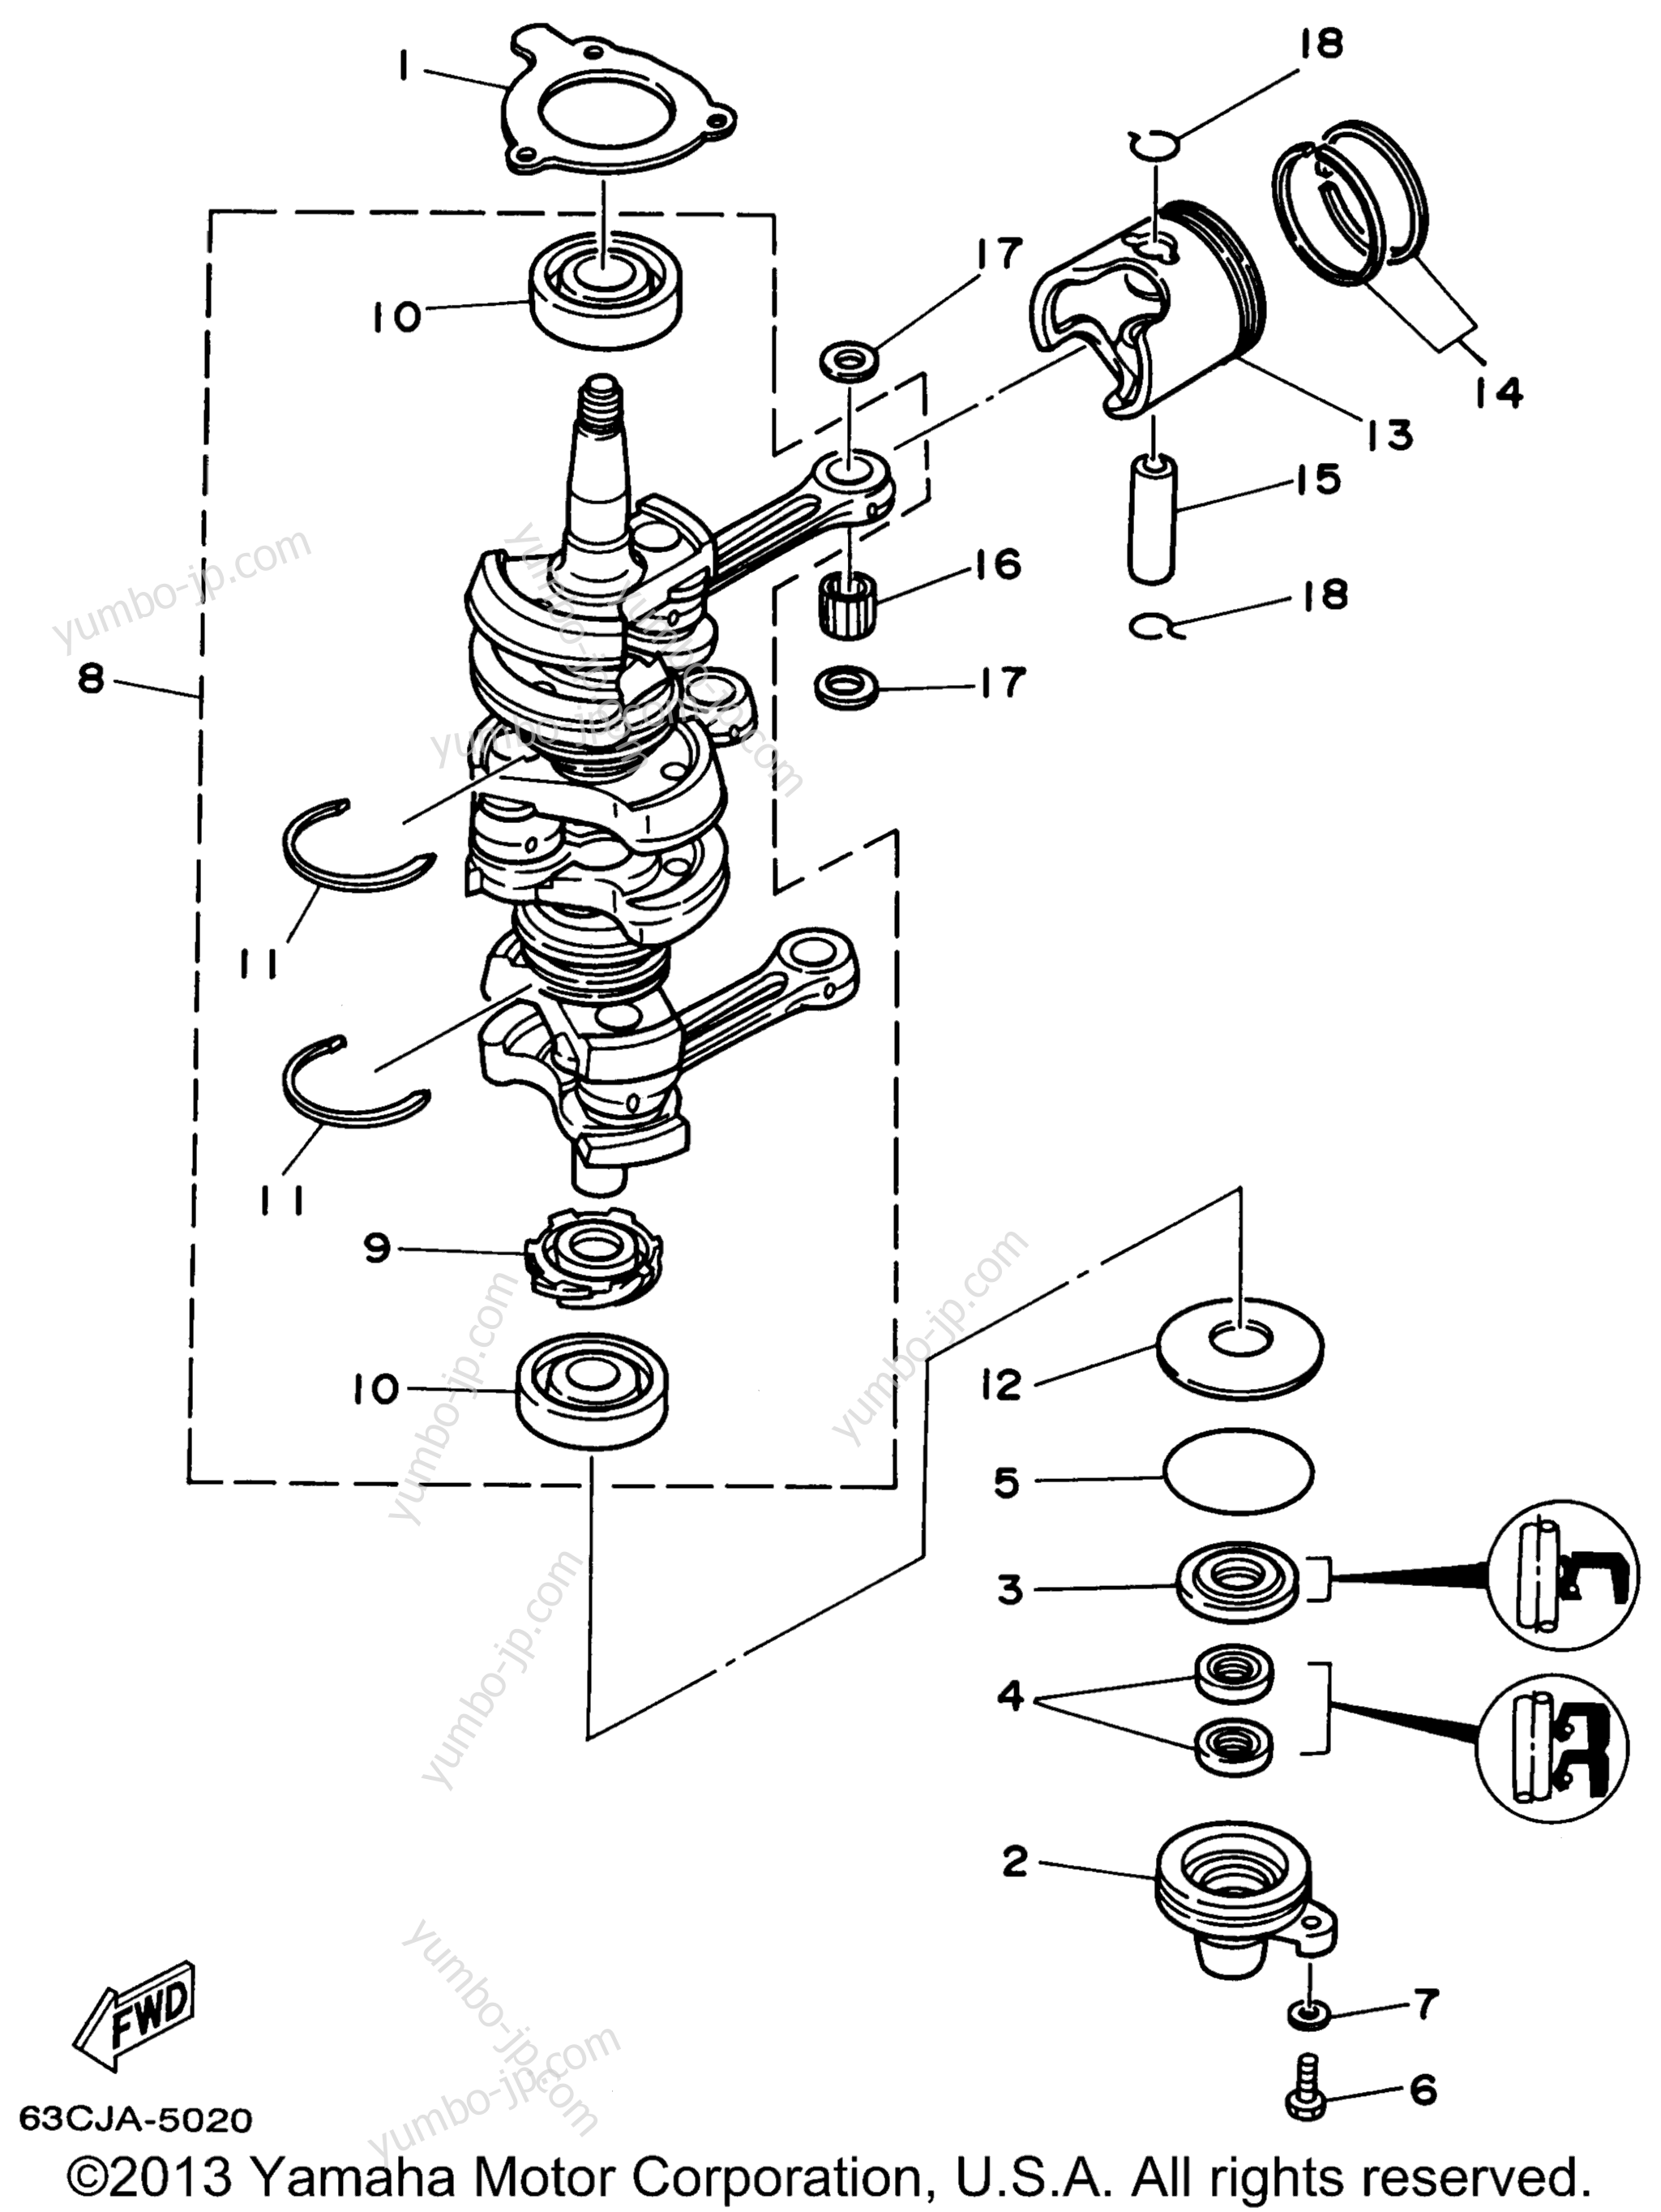 Коленвал и поршневая группа для лодочных моторов YAMAHA P40EJRW_THLW (P40TLHW) 1998 г.